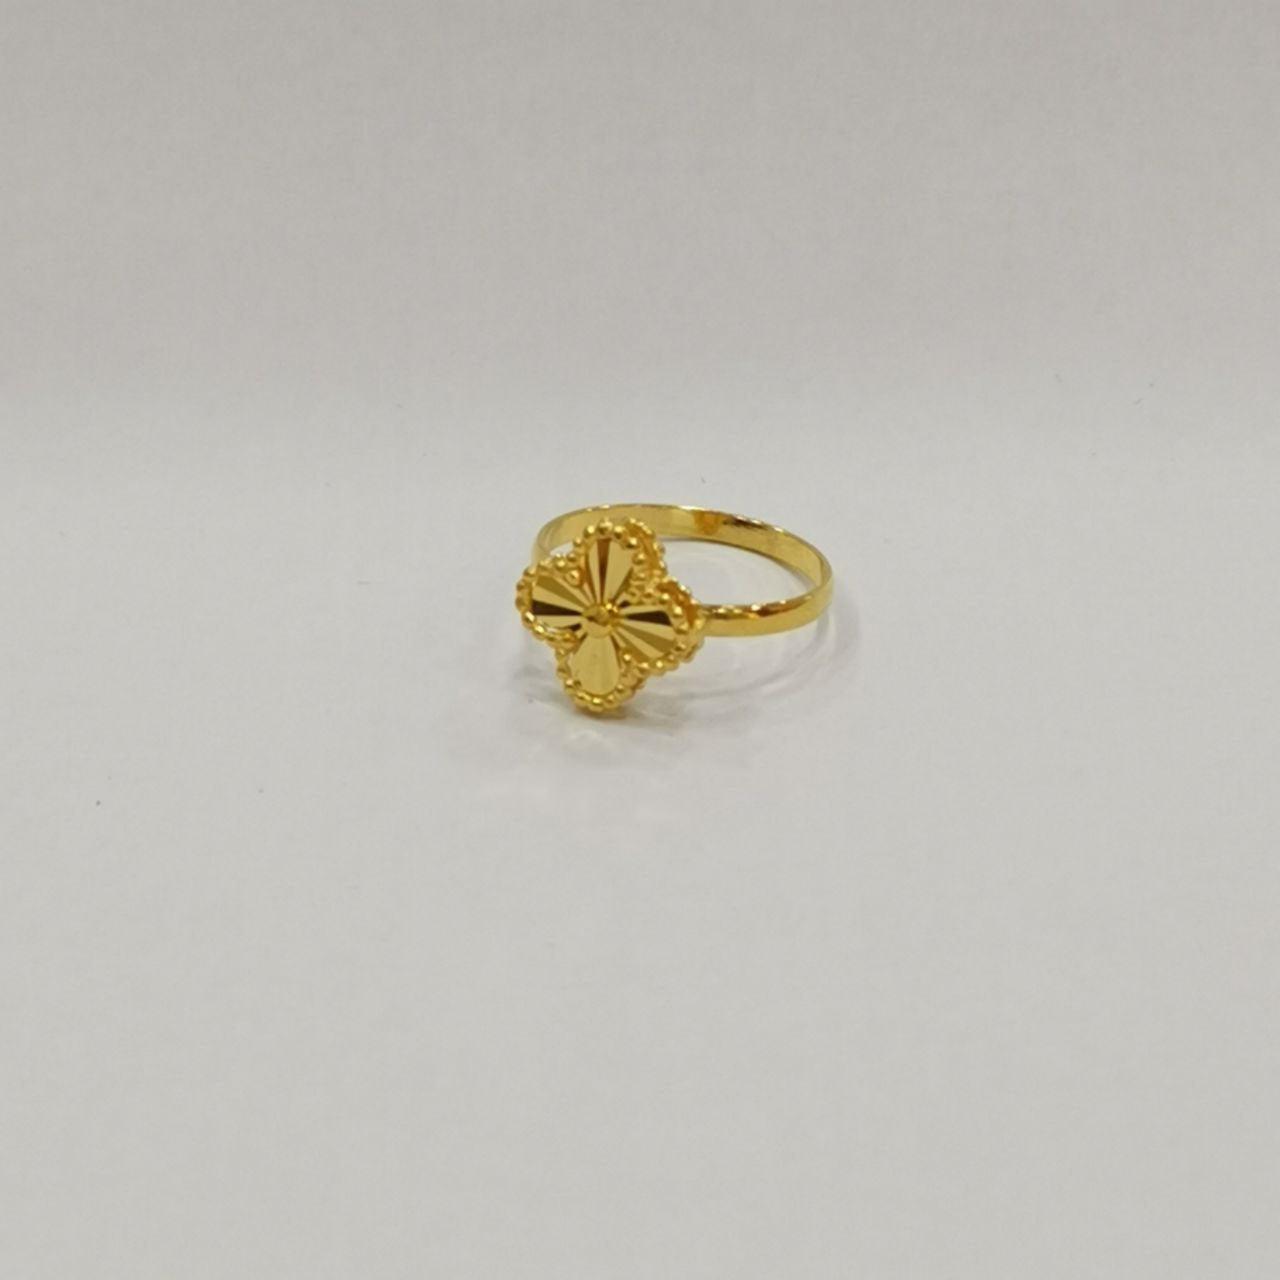 22k / 916 Gold Clover Leaf Ring-916 gold-Best Gold Shop